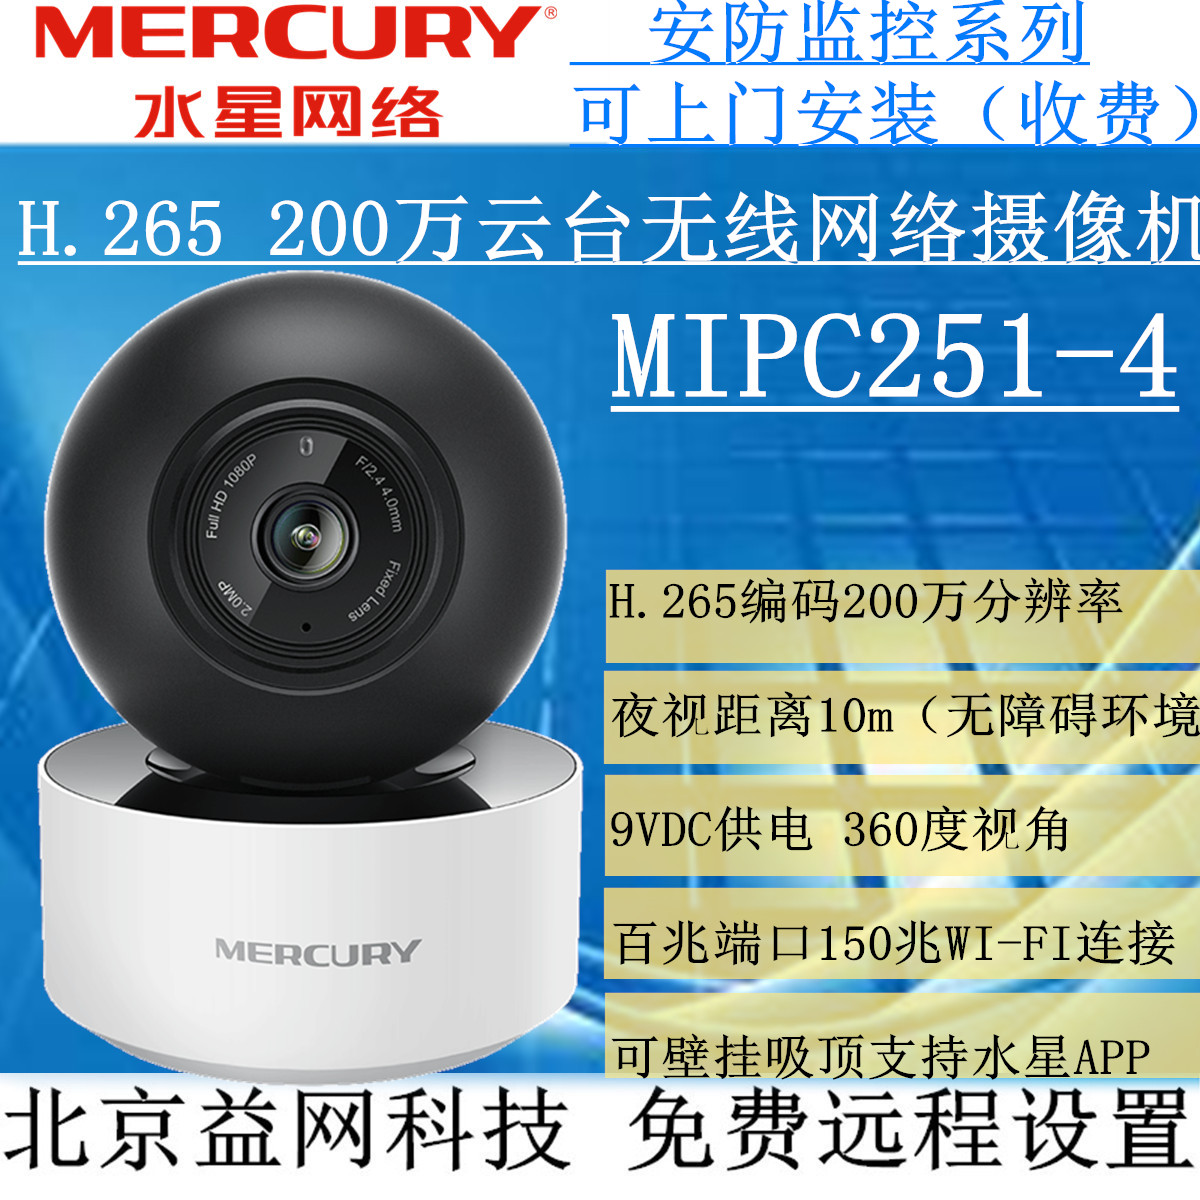 MERCURY MIPC251-4 2鸸 PTZ  WI-FI Ʈũ ī޶ 360 ܼ ߰ ð-